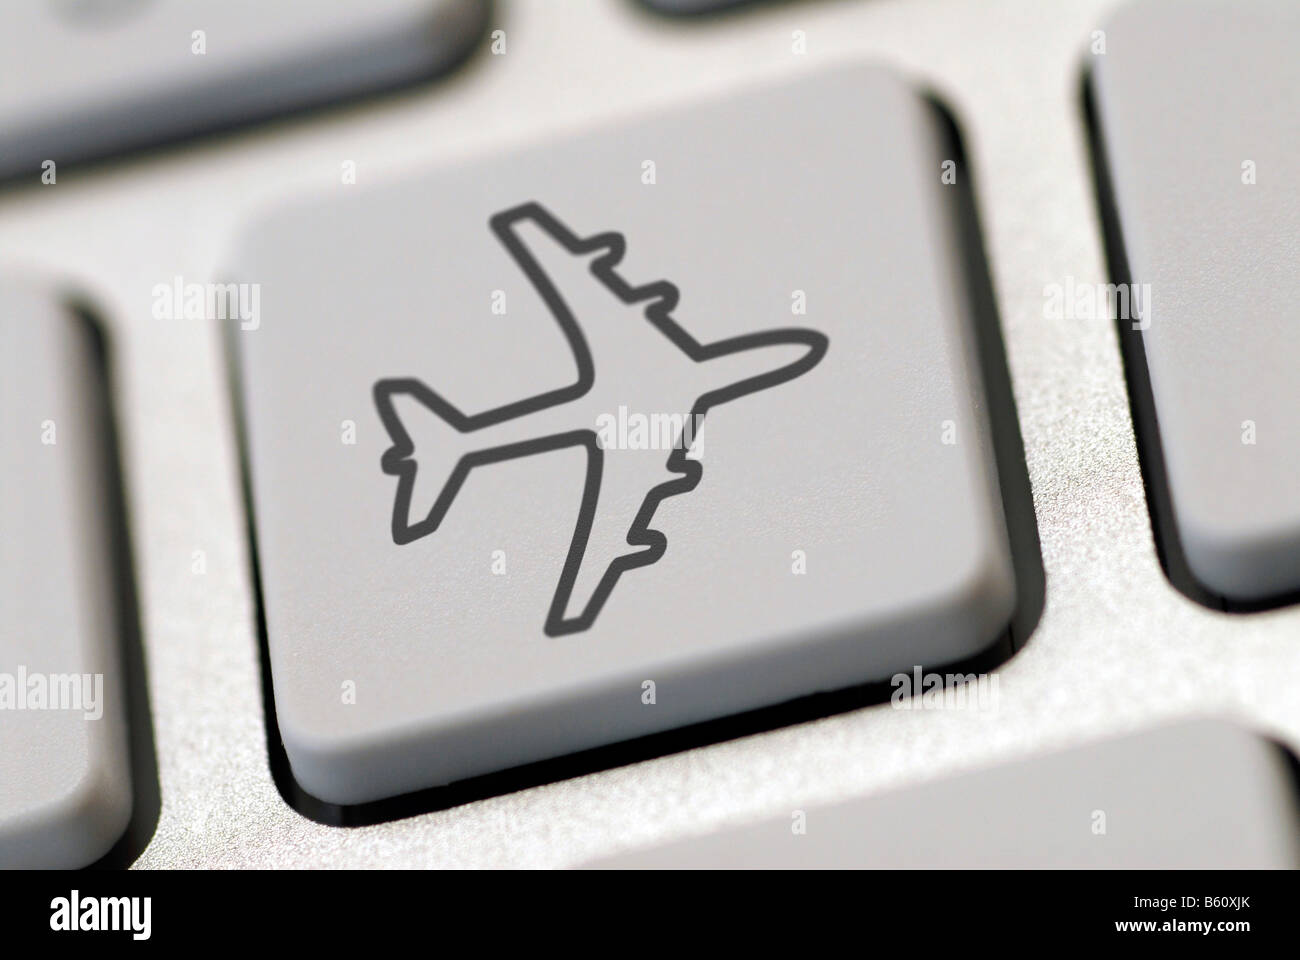 Tastiera del computer con un aereo simbolo, immagine simbolica per internet prenotazioni viaggi Foto Stock